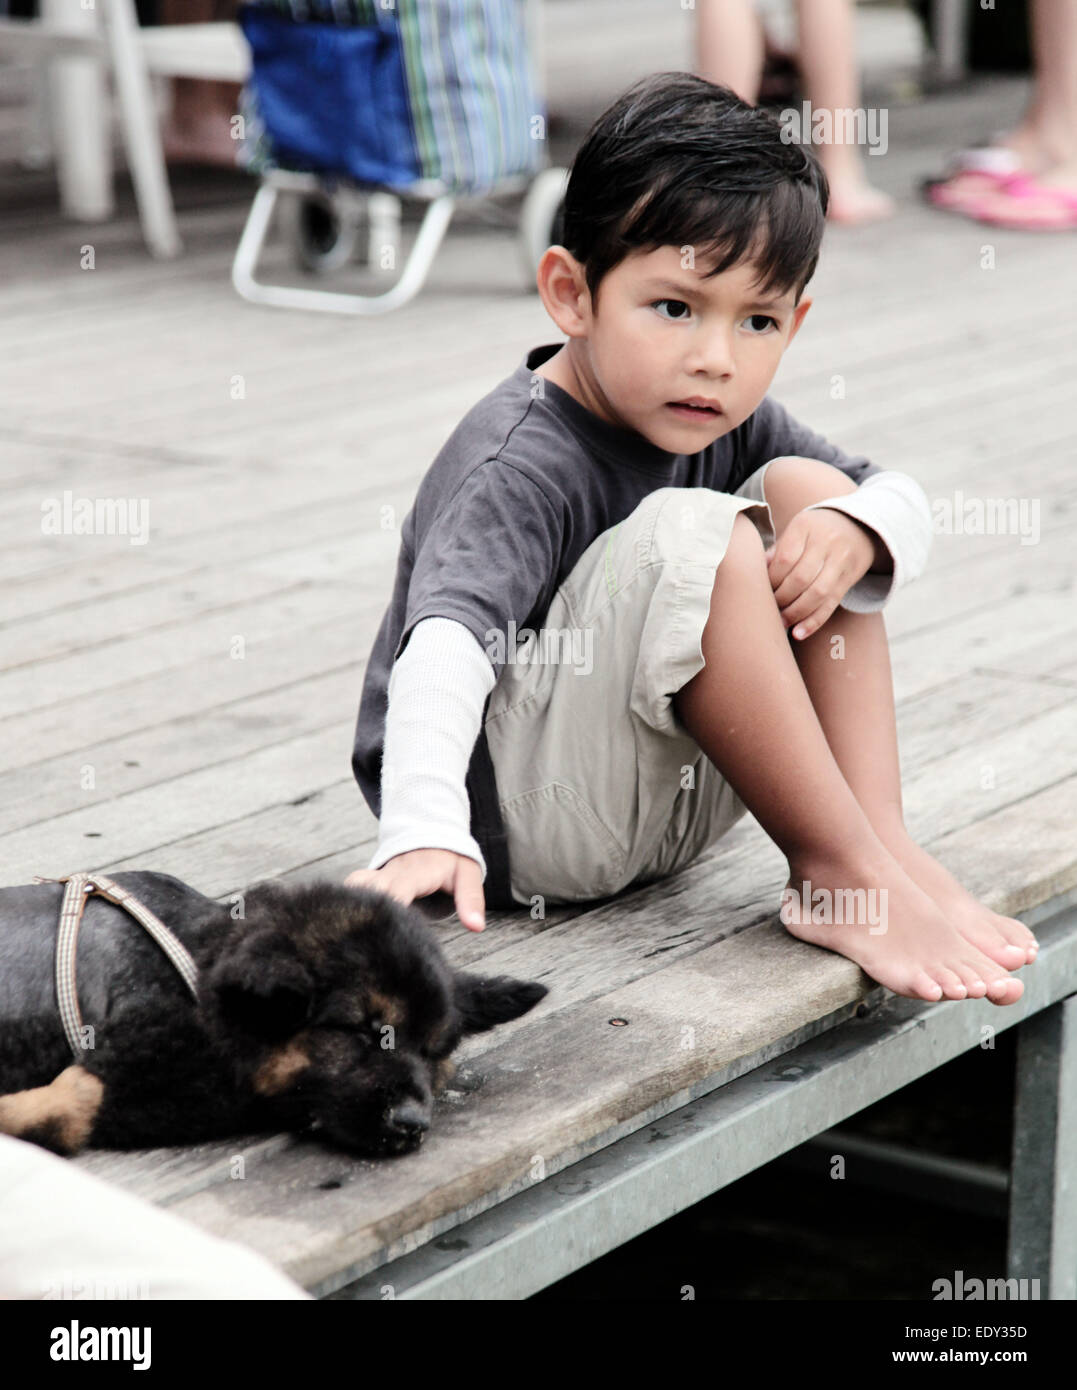 Cute little Asian Boy est caresser ou prendre soin d'un bébé chien allemand Shepard. Ils sont sur une plate-forme en bois à l'extérieur. Banque D'Images